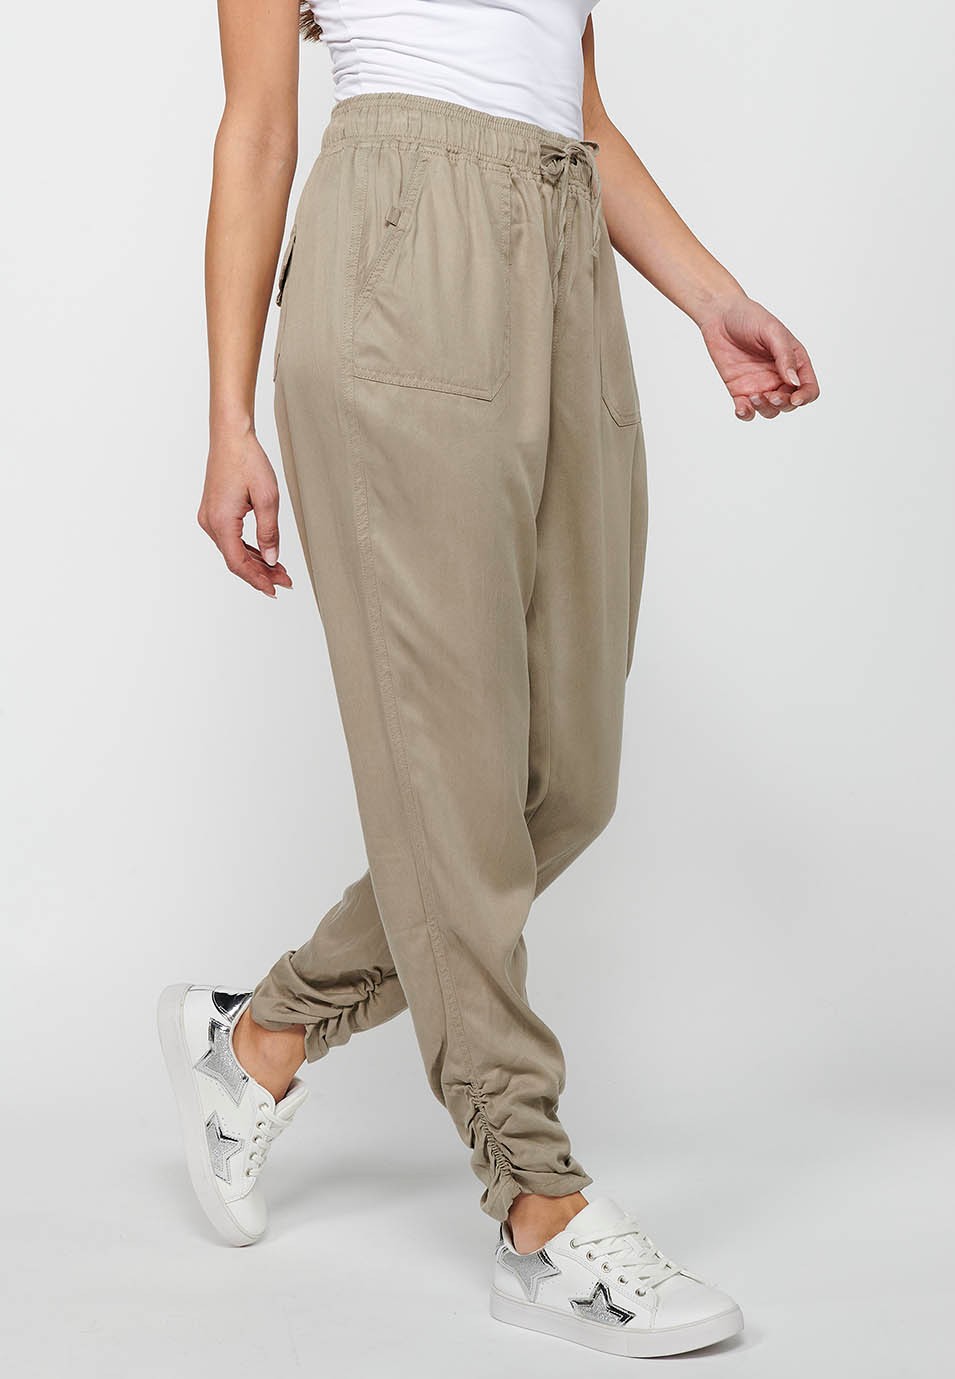 Pantalón largo jogger con Acabado rizado y Cintura engomada con Cuatro bolsillos, dos traseros con solapa de Color Gris para Mujer 3